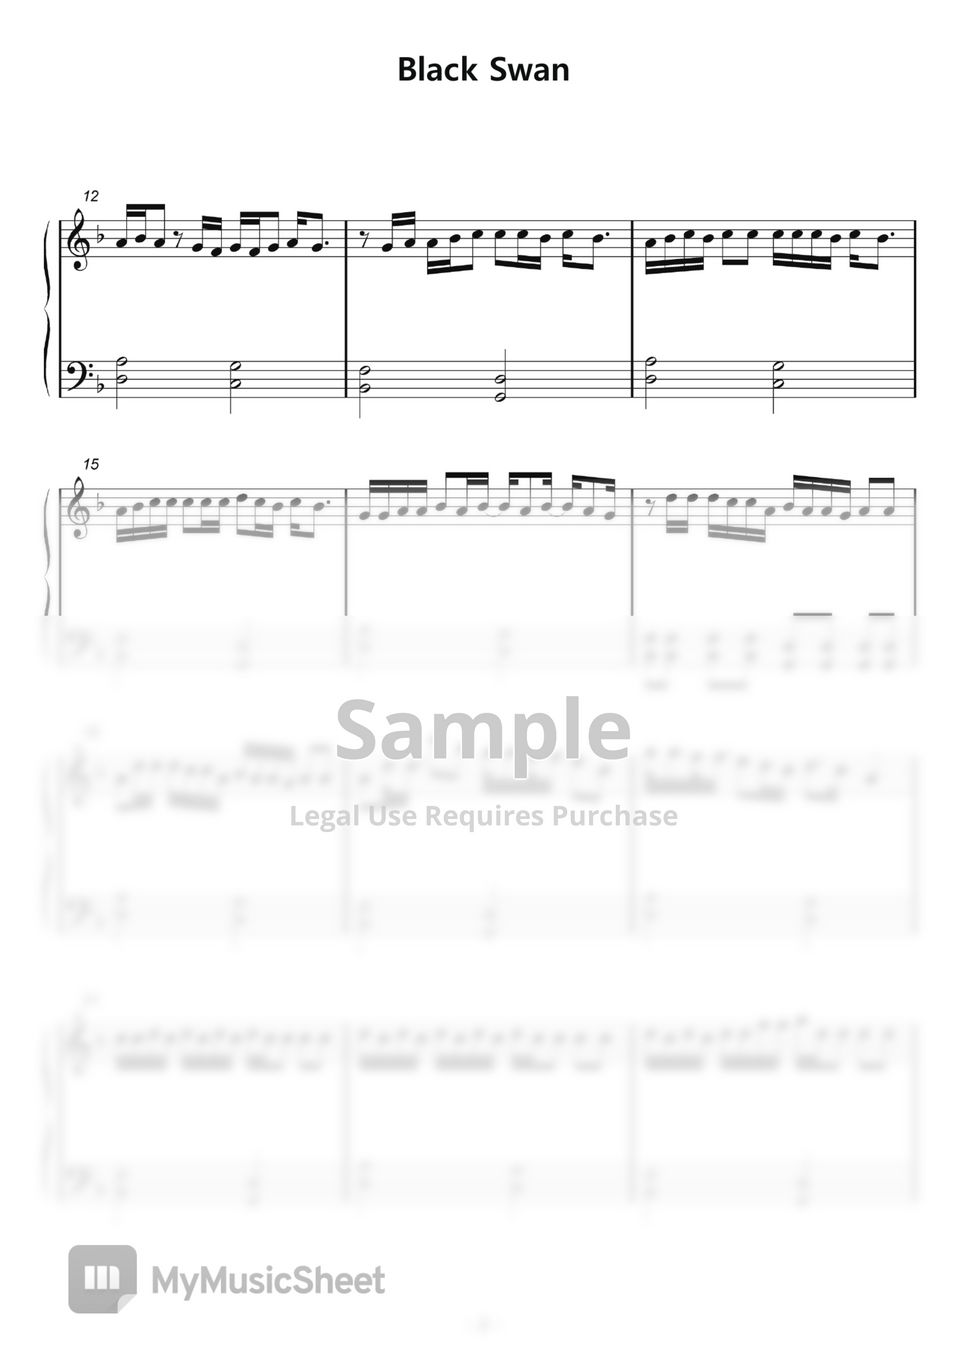 BTS - Black Swan (Piano iPad) by samsunny